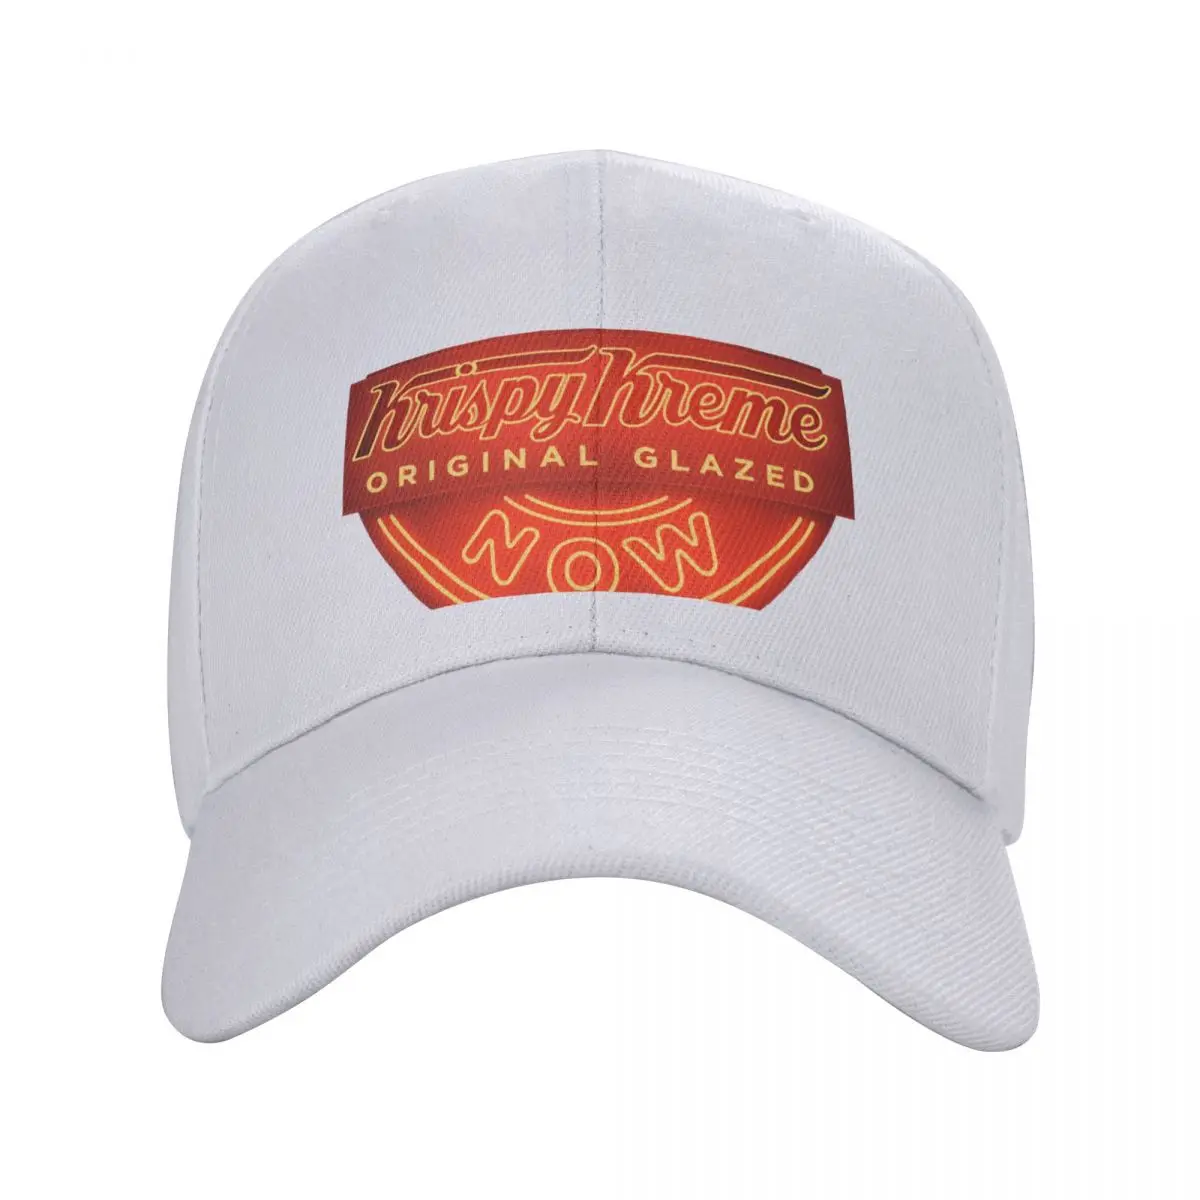 Товары с круглым логотипом Krispy Kreme, Бейсболка, шляпа, Пляжная аниме-шляпа, кепки для прогулок на пляже, мужские, женские